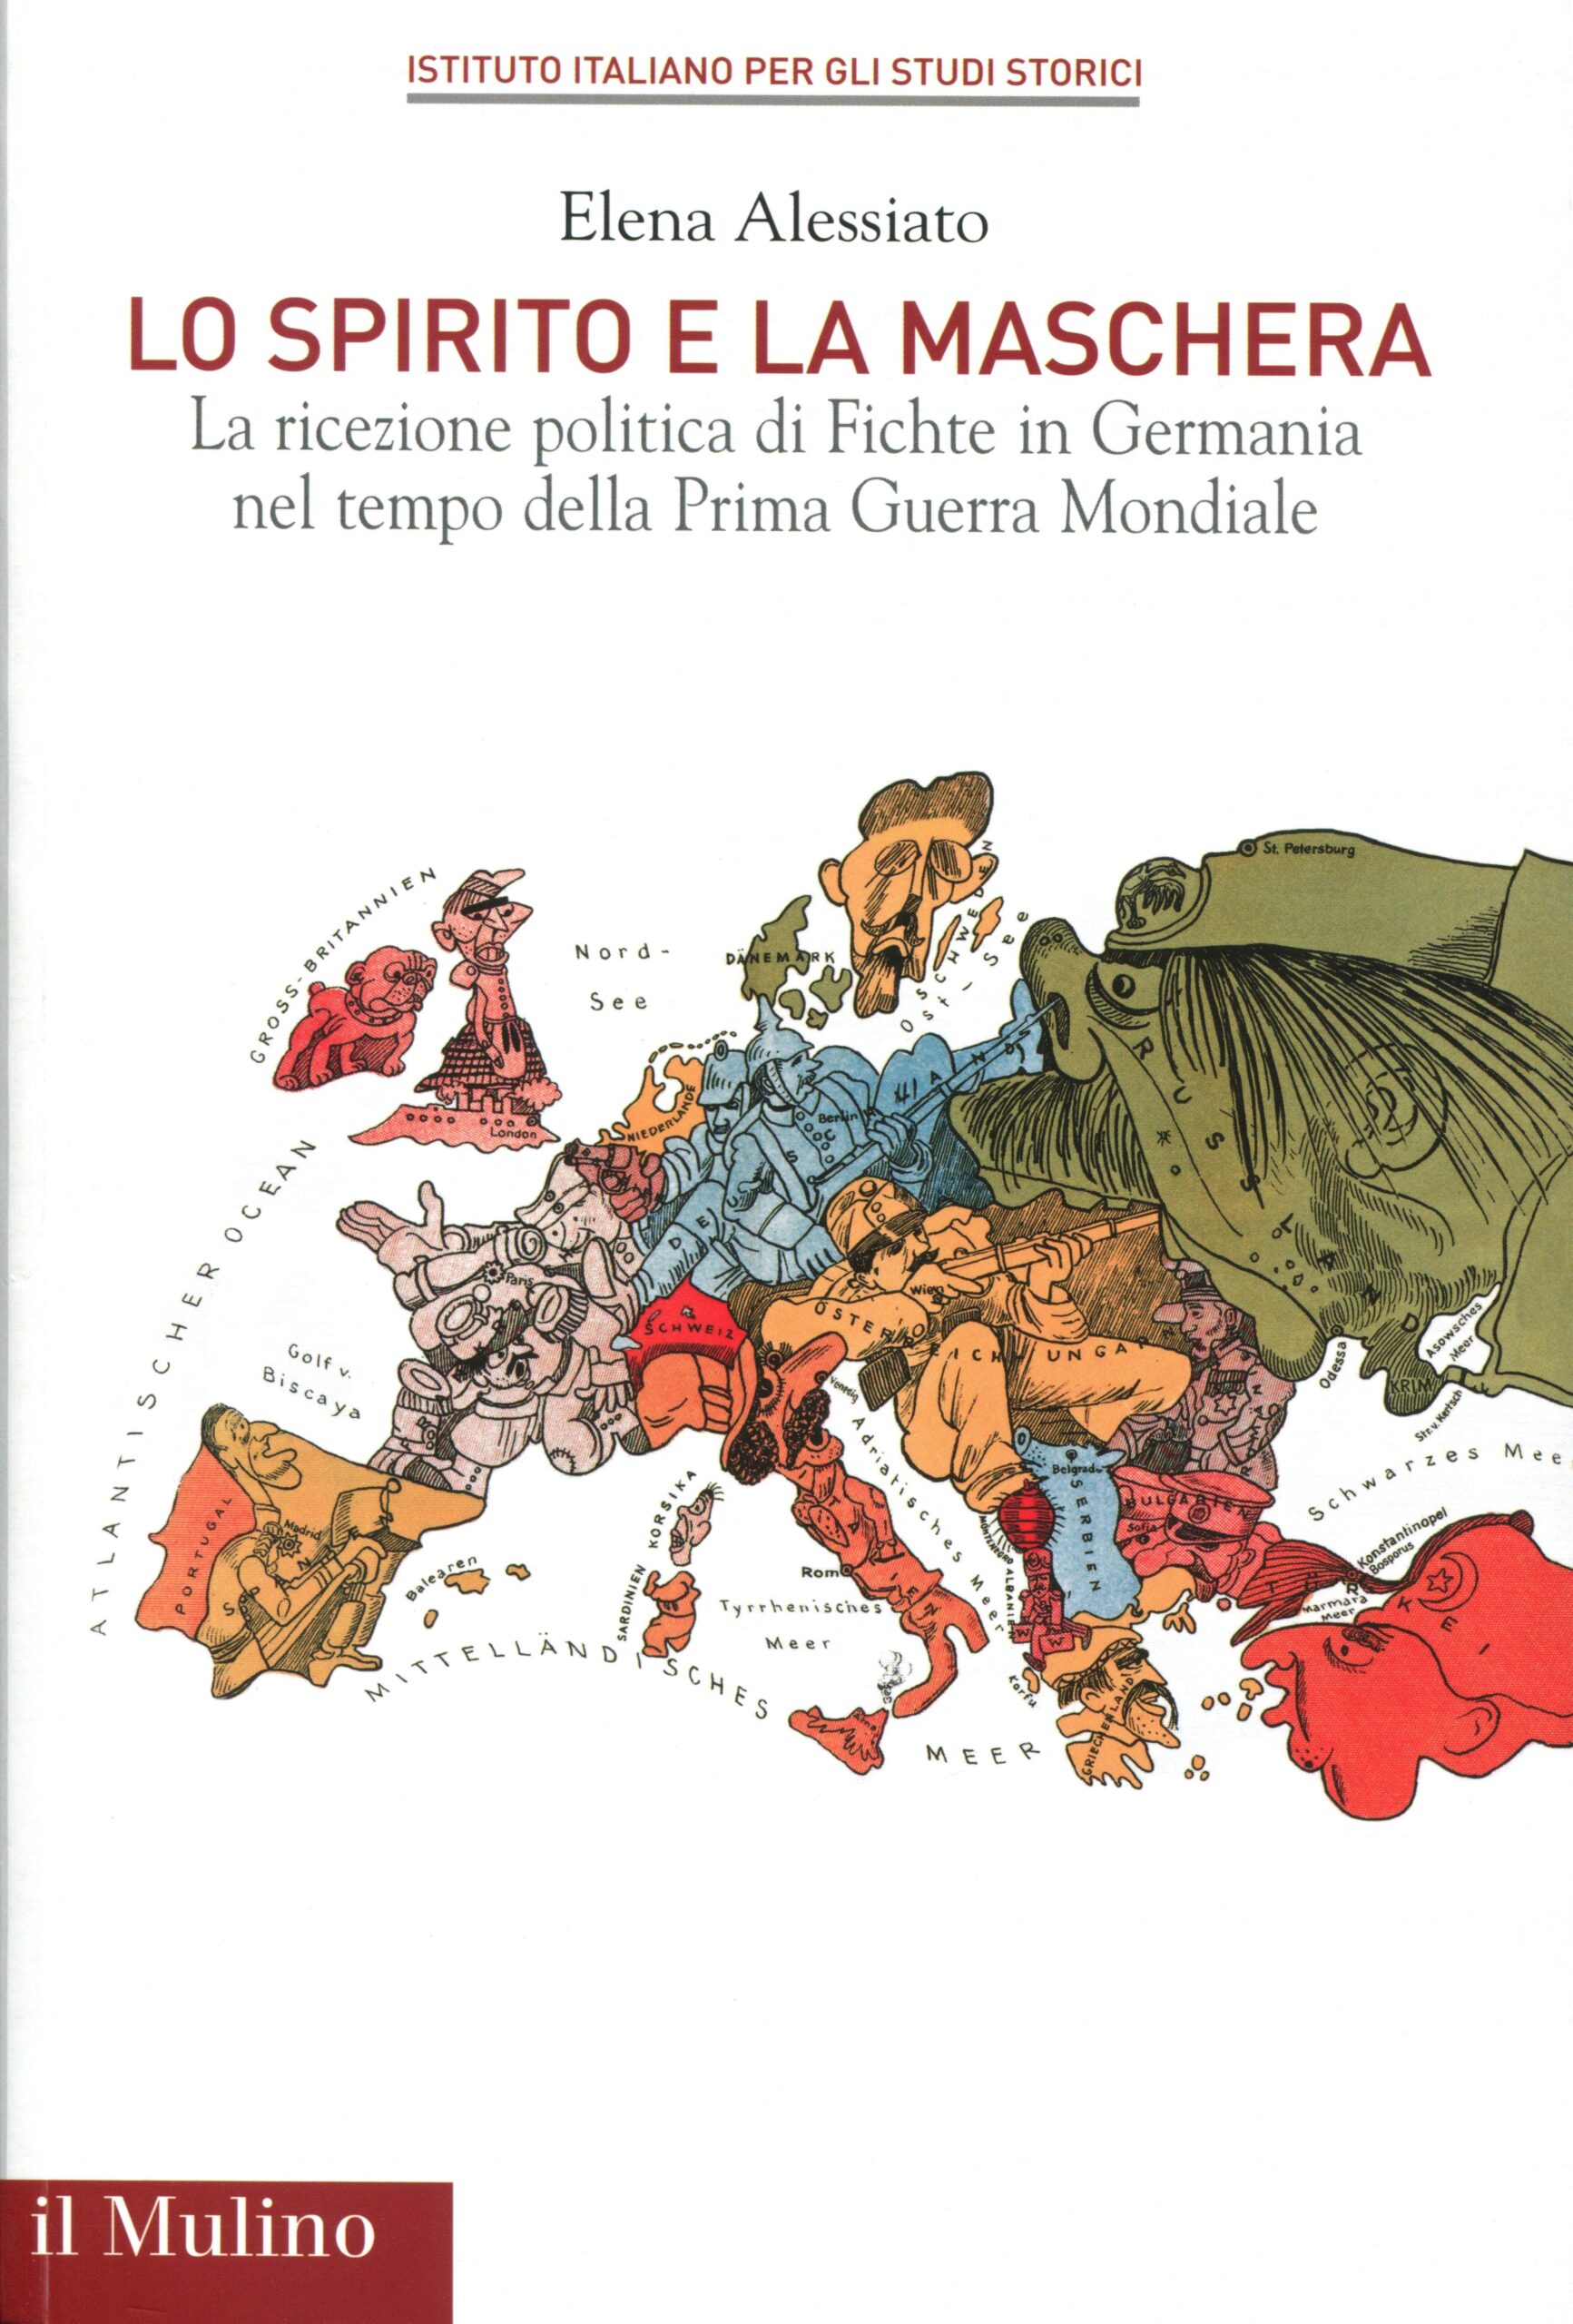 9 ottobre 2019, ore 16: Presentazione volume A. Alessiato, “Lo spirito e la maschera. La ricezione politica di Fichte in Germania nel tempo della prima guerra mondiale”